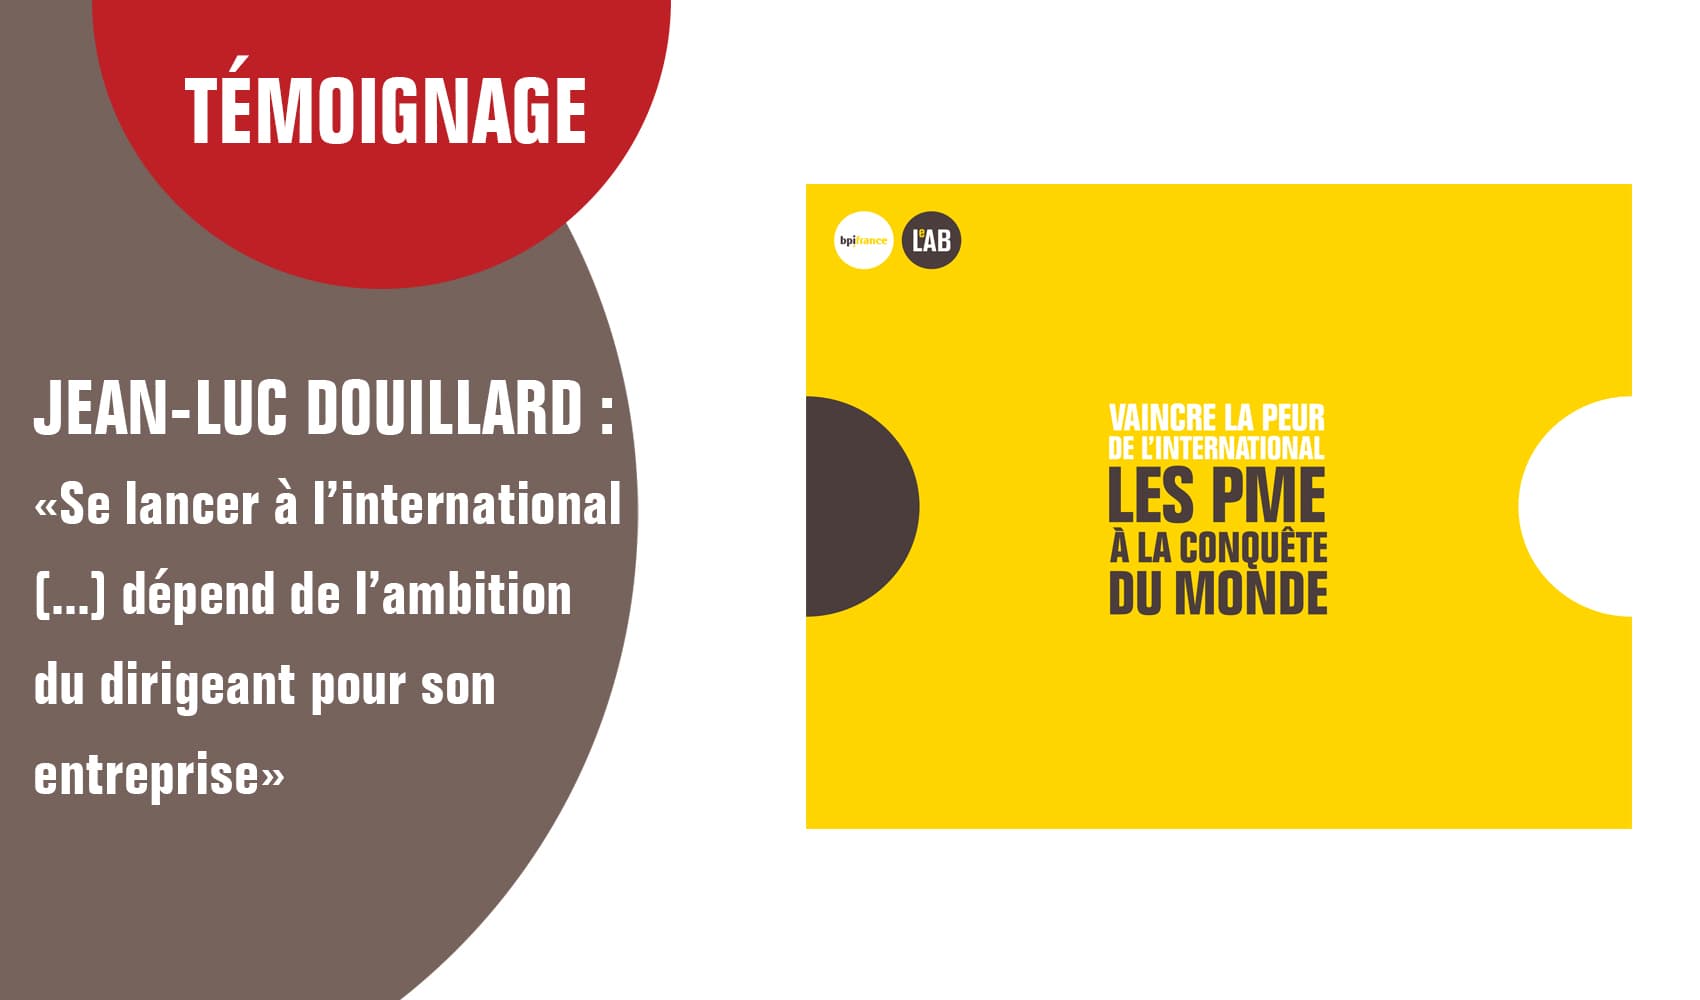 Jean-Luc Douillard “Se lancer à l’international (...) dépend de l’ambition du dirigeant pour son entreprise”